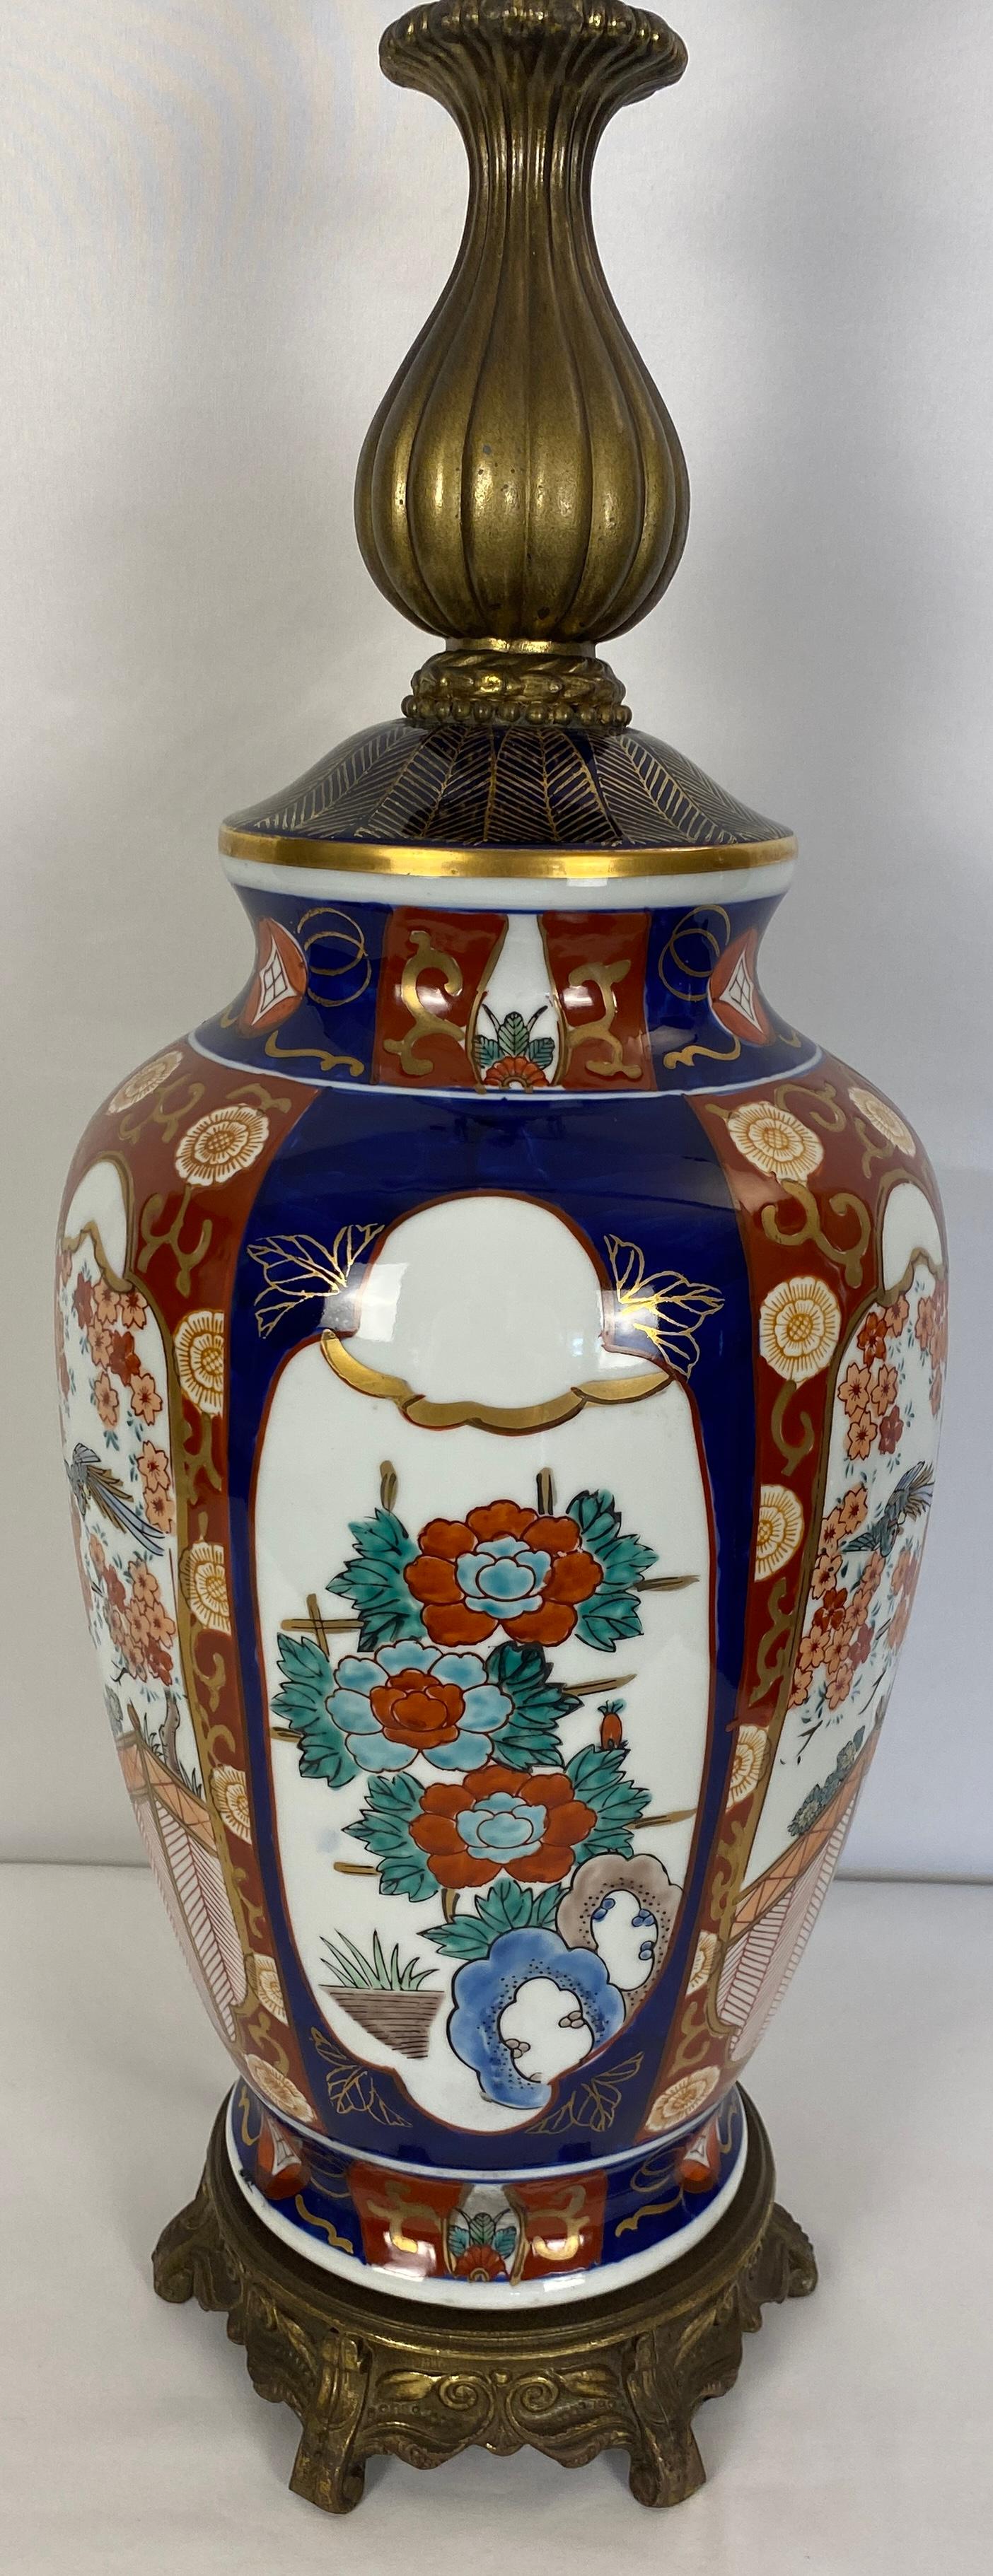 Zwei Lampen im Stil des japanischen Imari-Porzellans, dekoriert mit traditionellen Figuren, Blumen und Pagoden in Rosa- und Grüntönen auf weißem Grund in dekorierten Bordüren, 

Sie wurden von der Firma Honi Chilo in der Mitte des Jahrhunderts